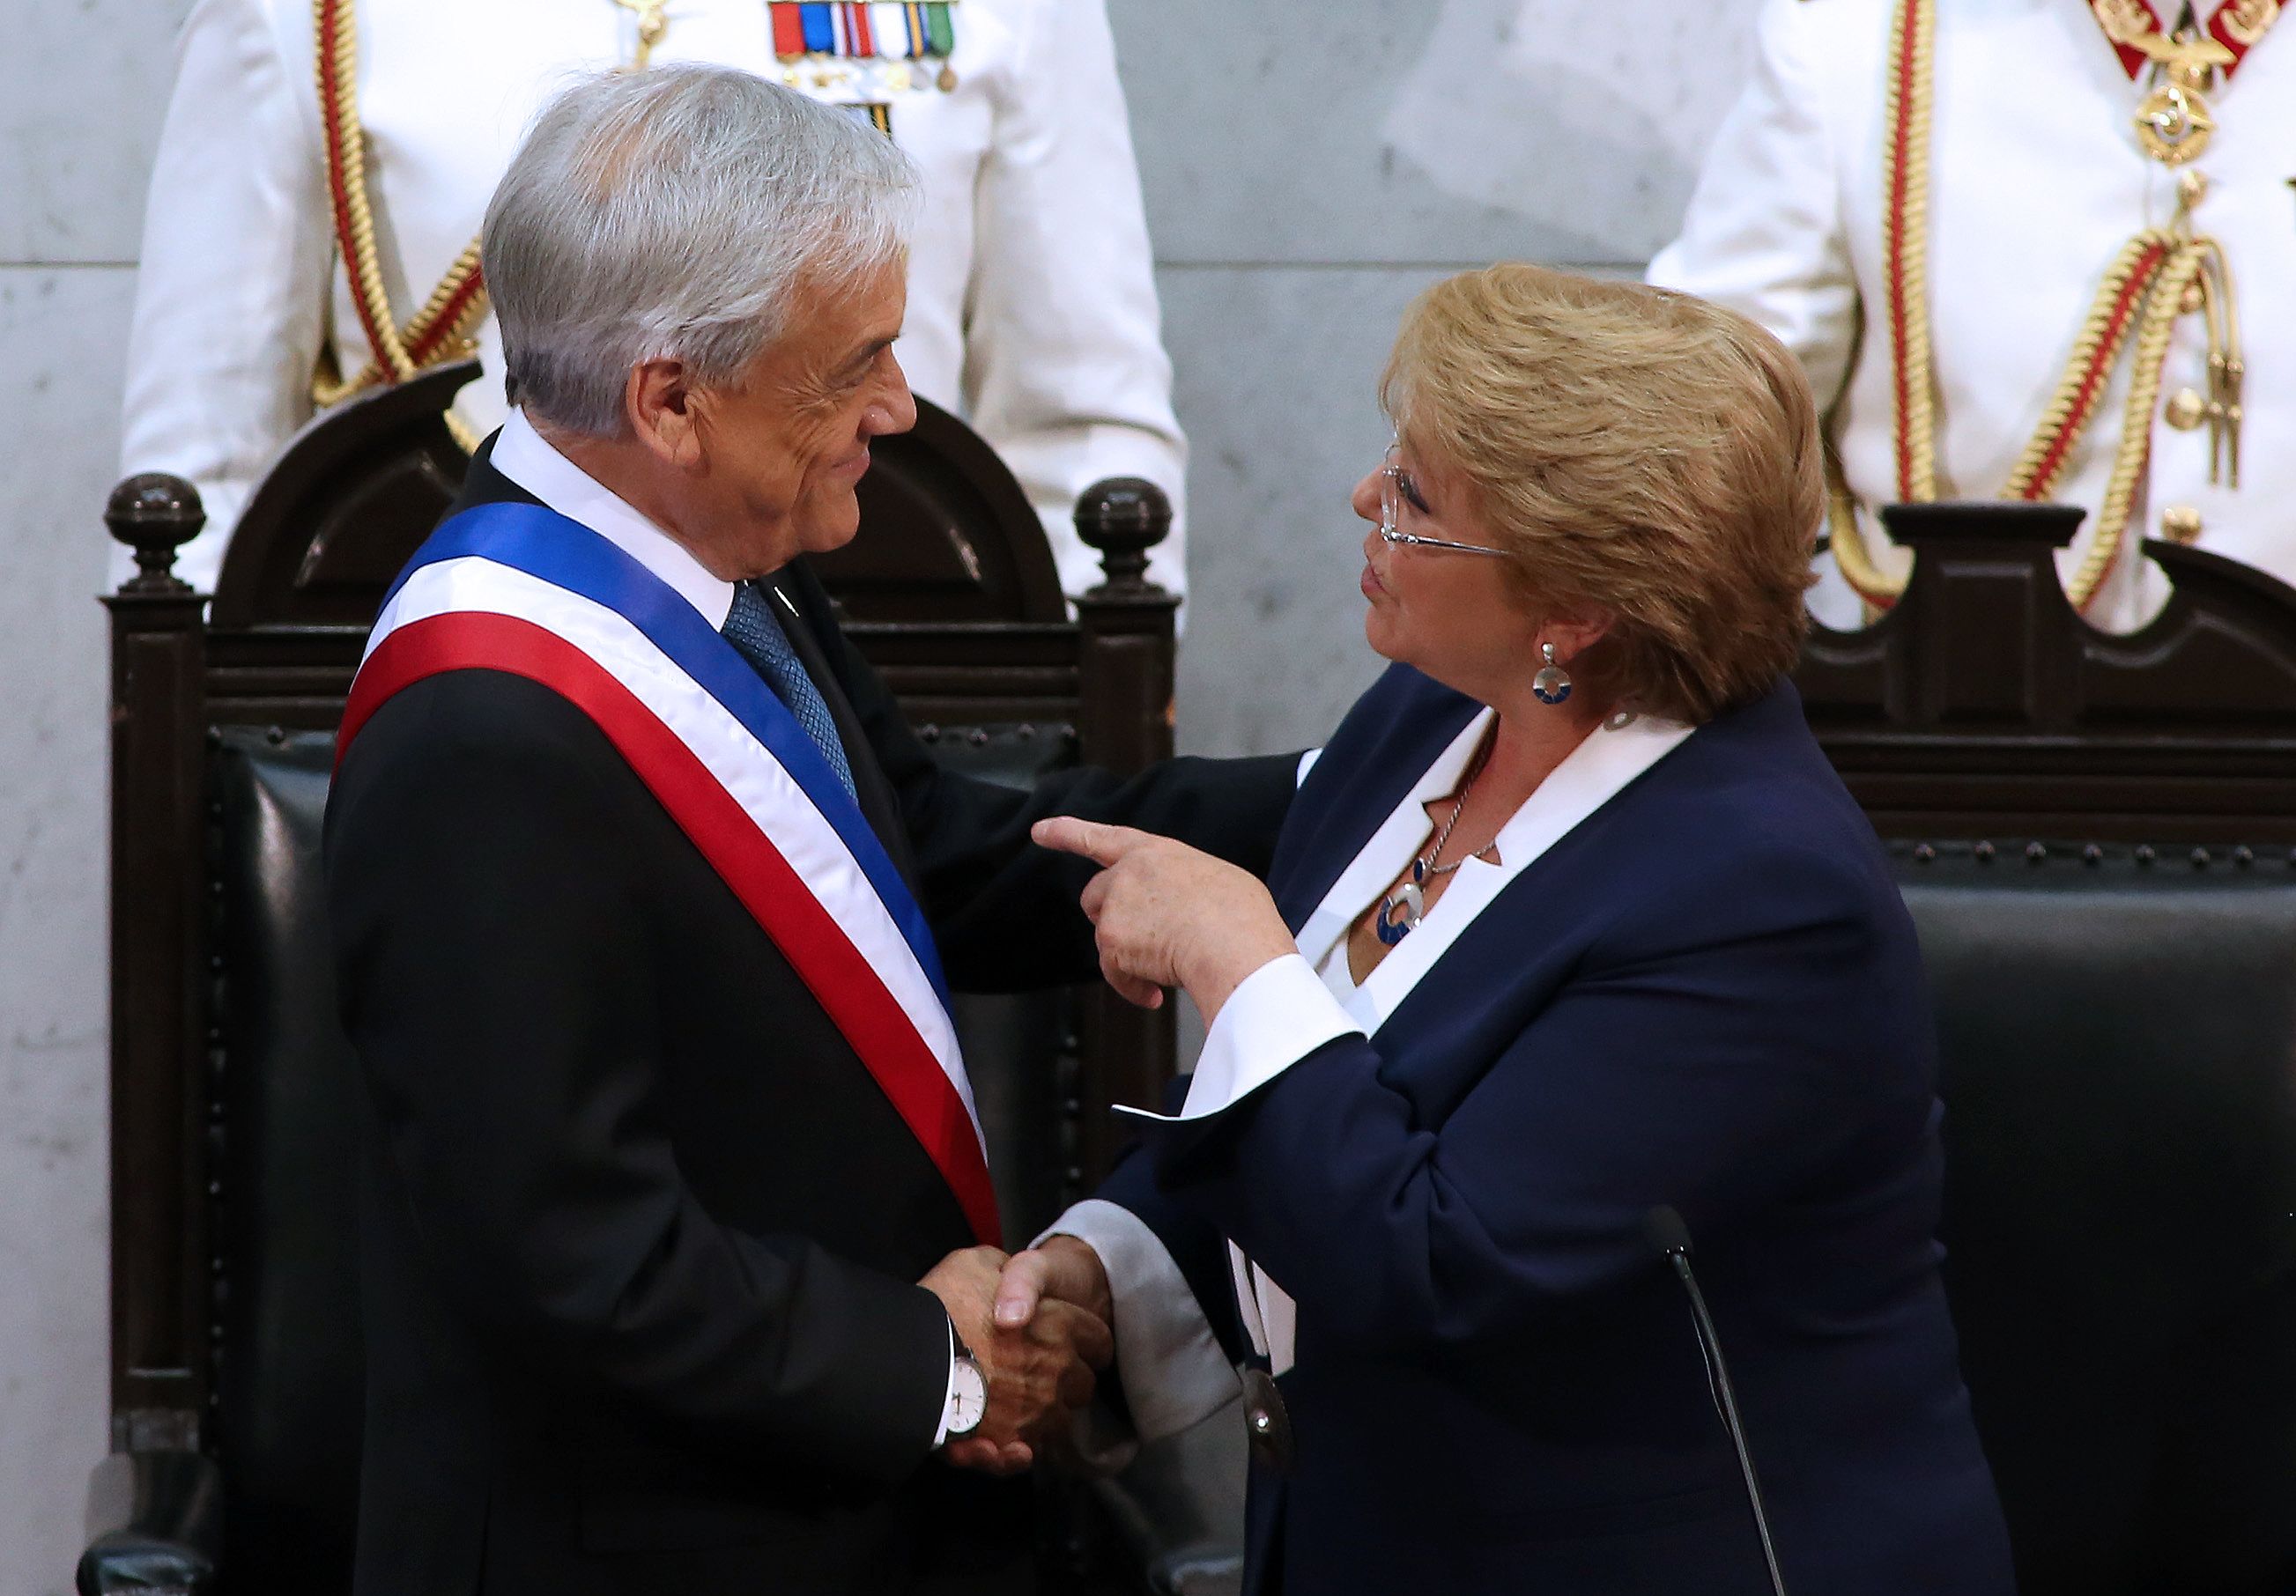 سيباستيان بينيرا الرئيس الجديد يصافح الرئيسة السابقة